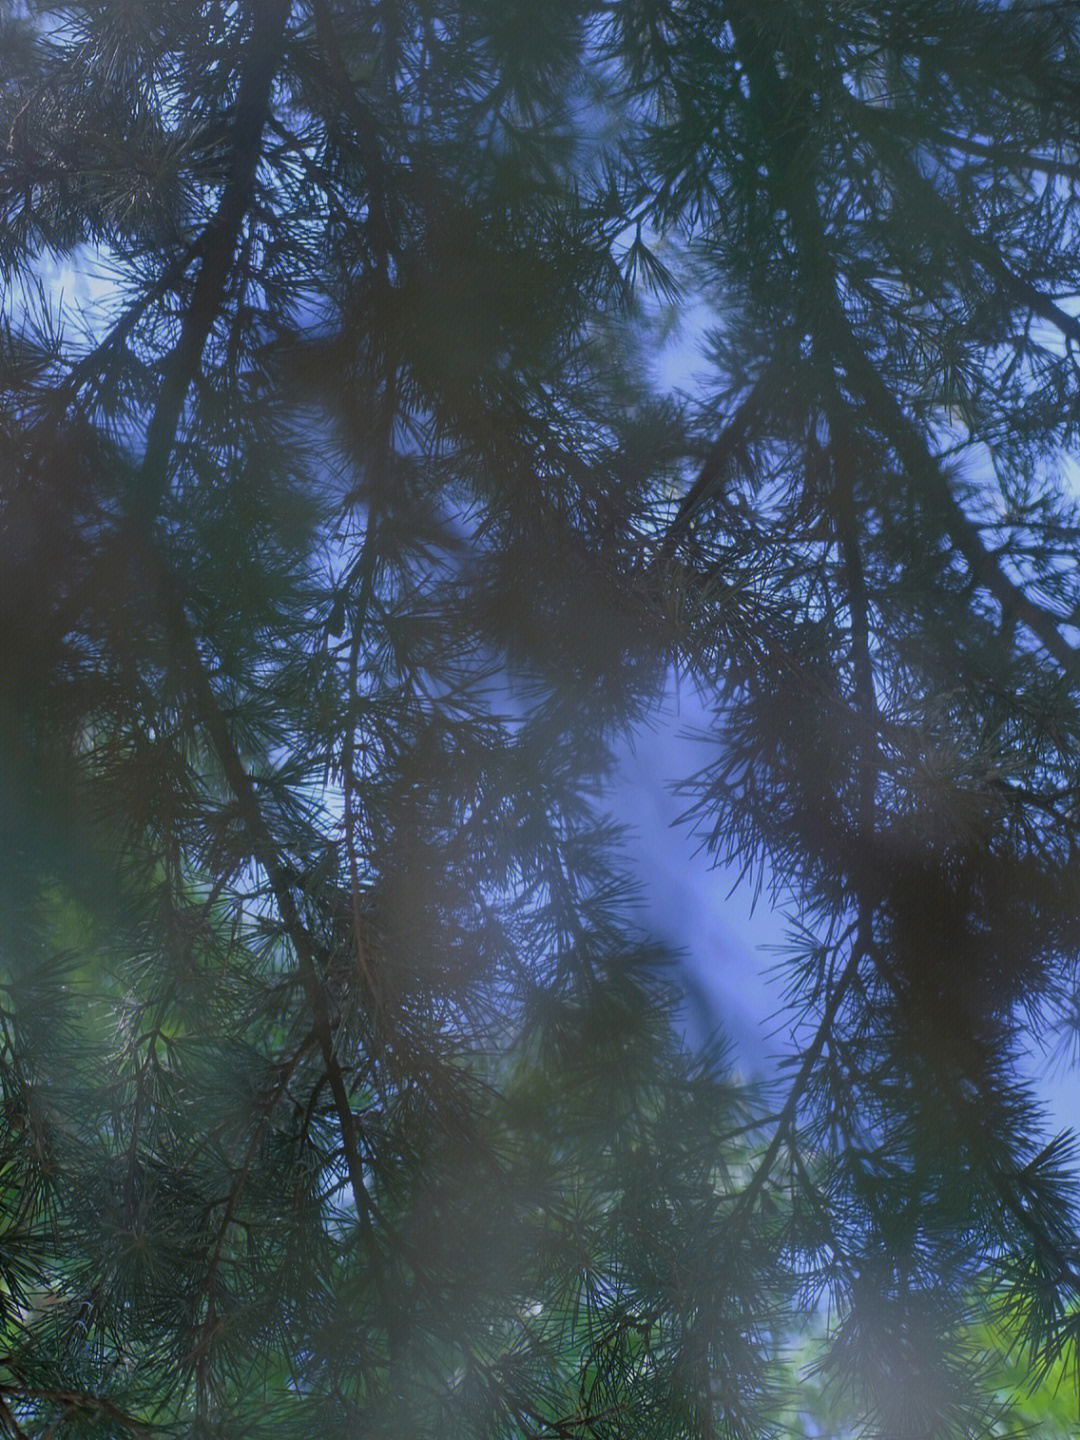 一眼望去,一片树的枝叶像迷茫的雾,像蓝色的云,也像透明的泡沫